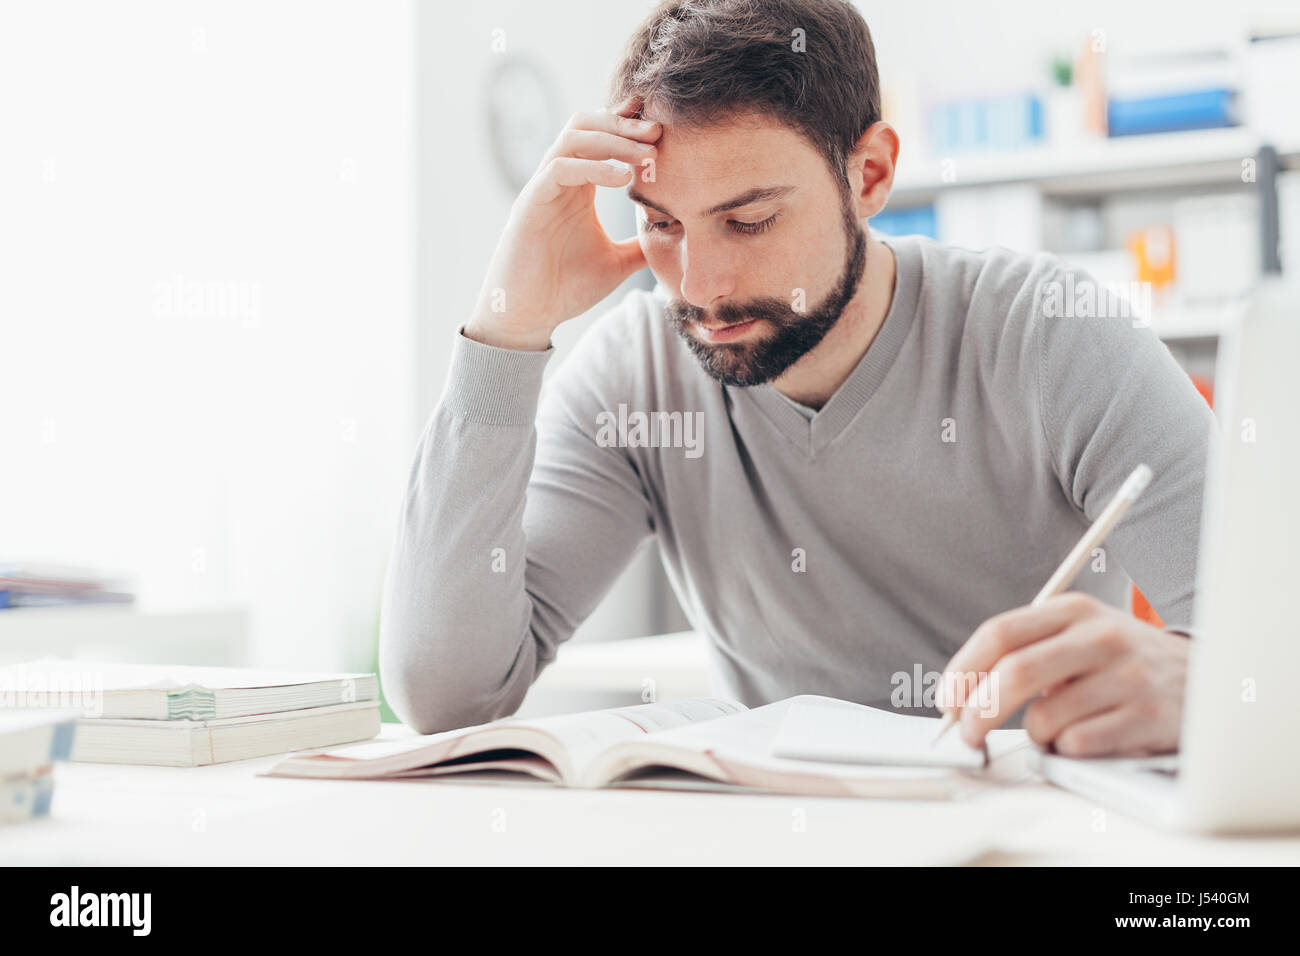 Erwachsener Mann am Schreibtisch sitzen und studieren an der Bibliothek konzentriert lernen und selbst-Verbesserung-Konzept Stockfoto